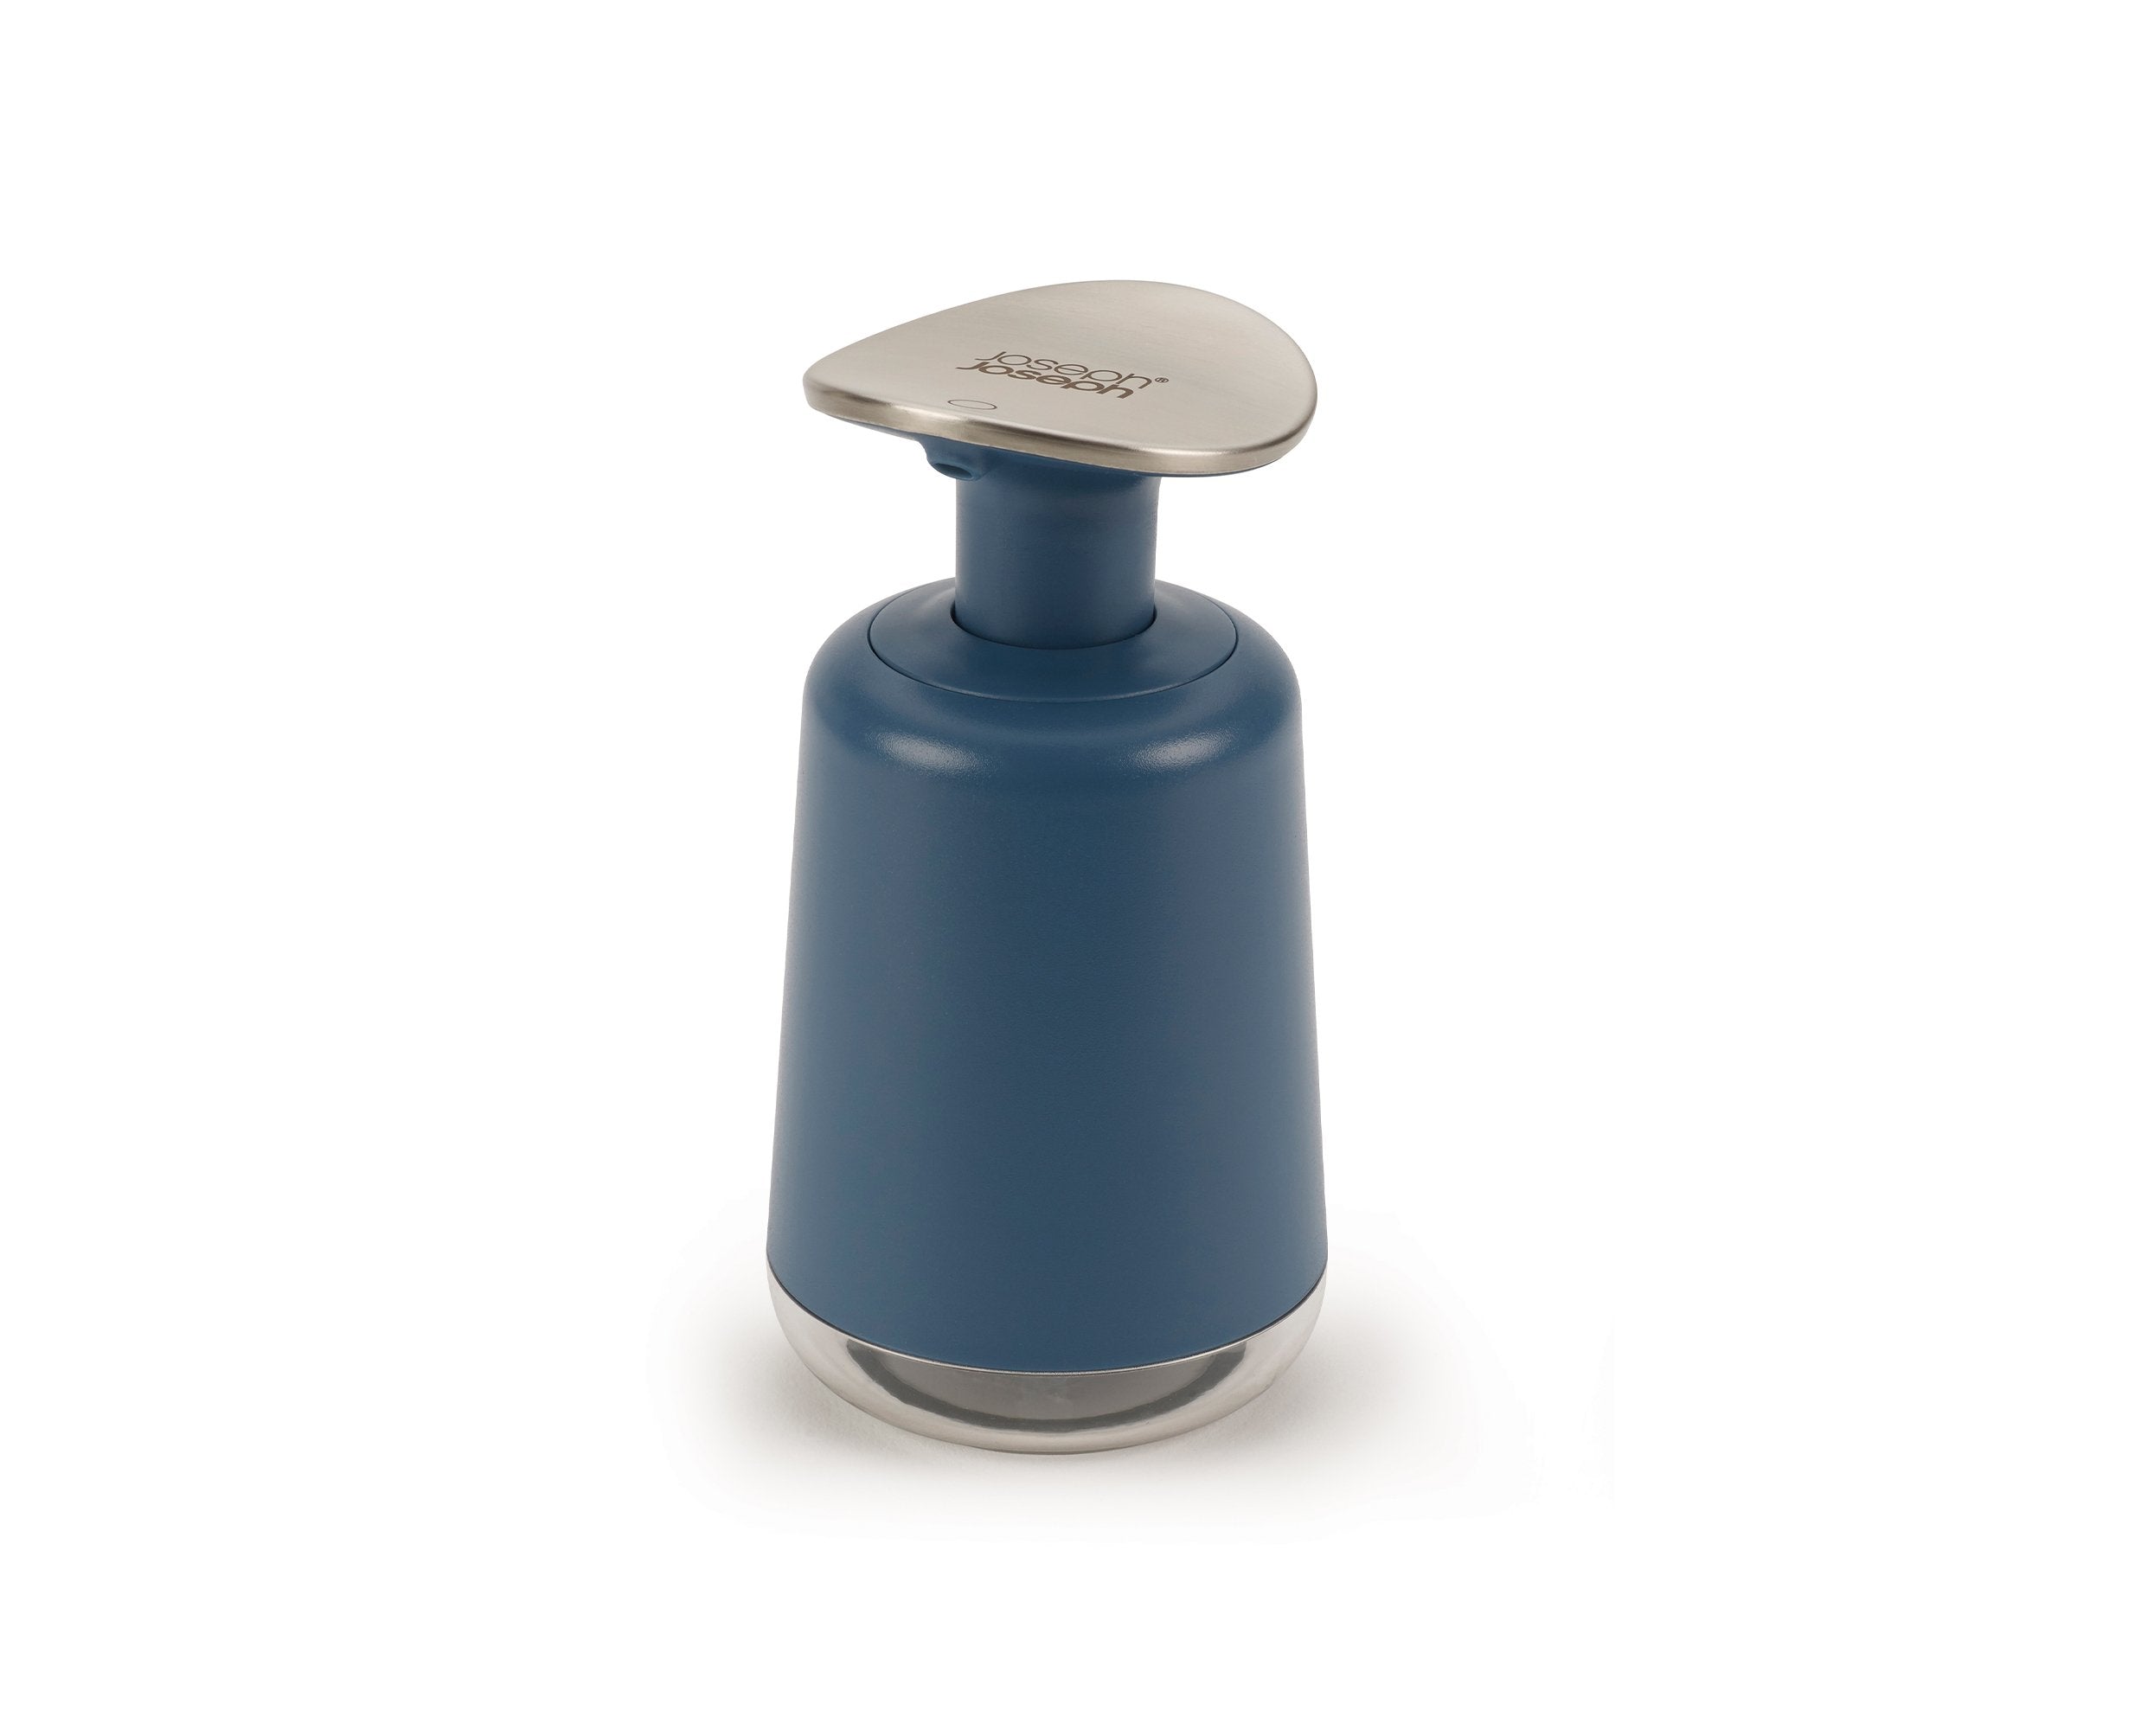 Presto™ Hygienic Soap Dispenser - Editions